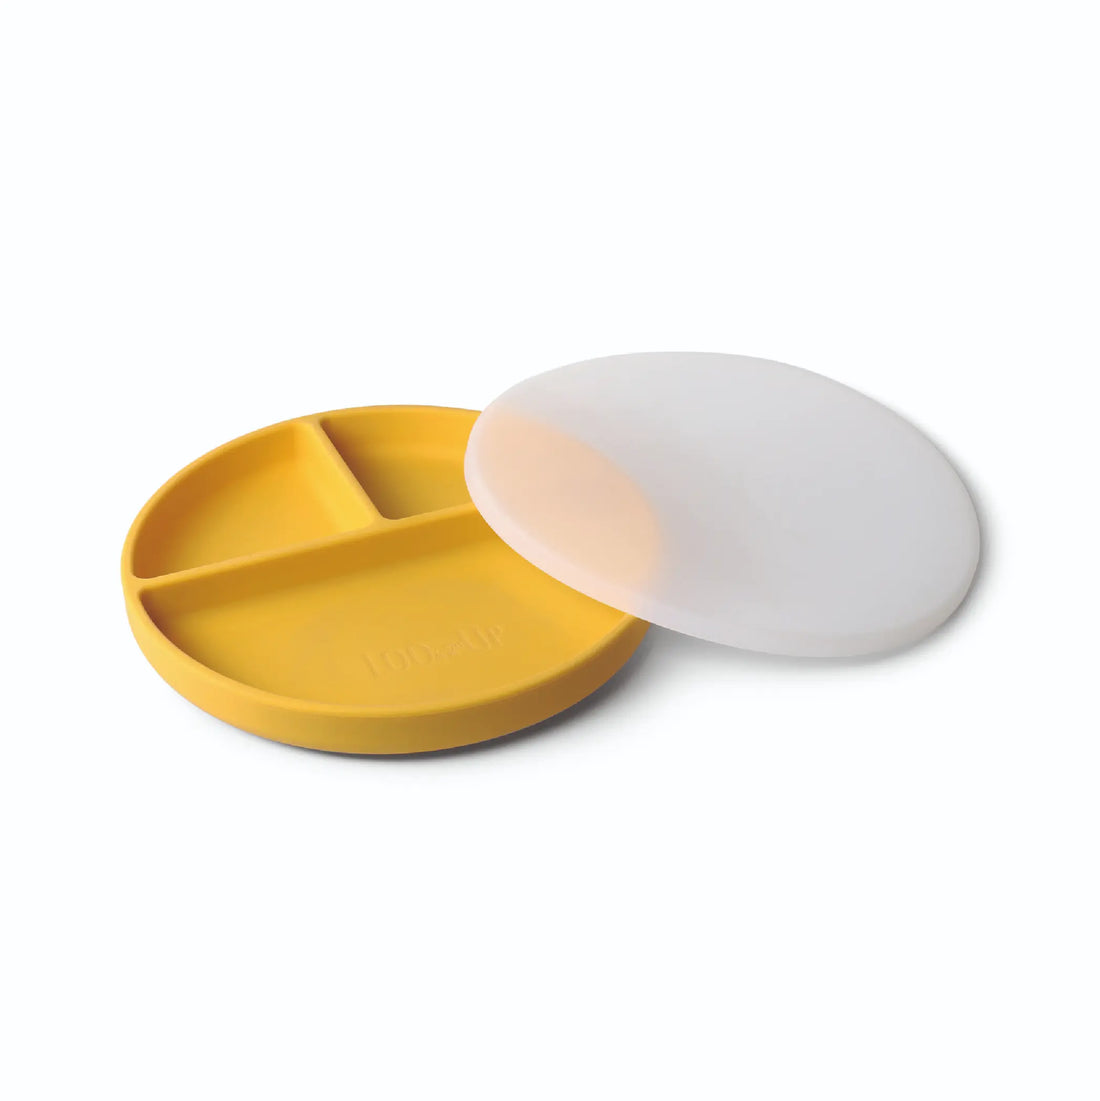 Assiette à compartiments en silicone moutarde